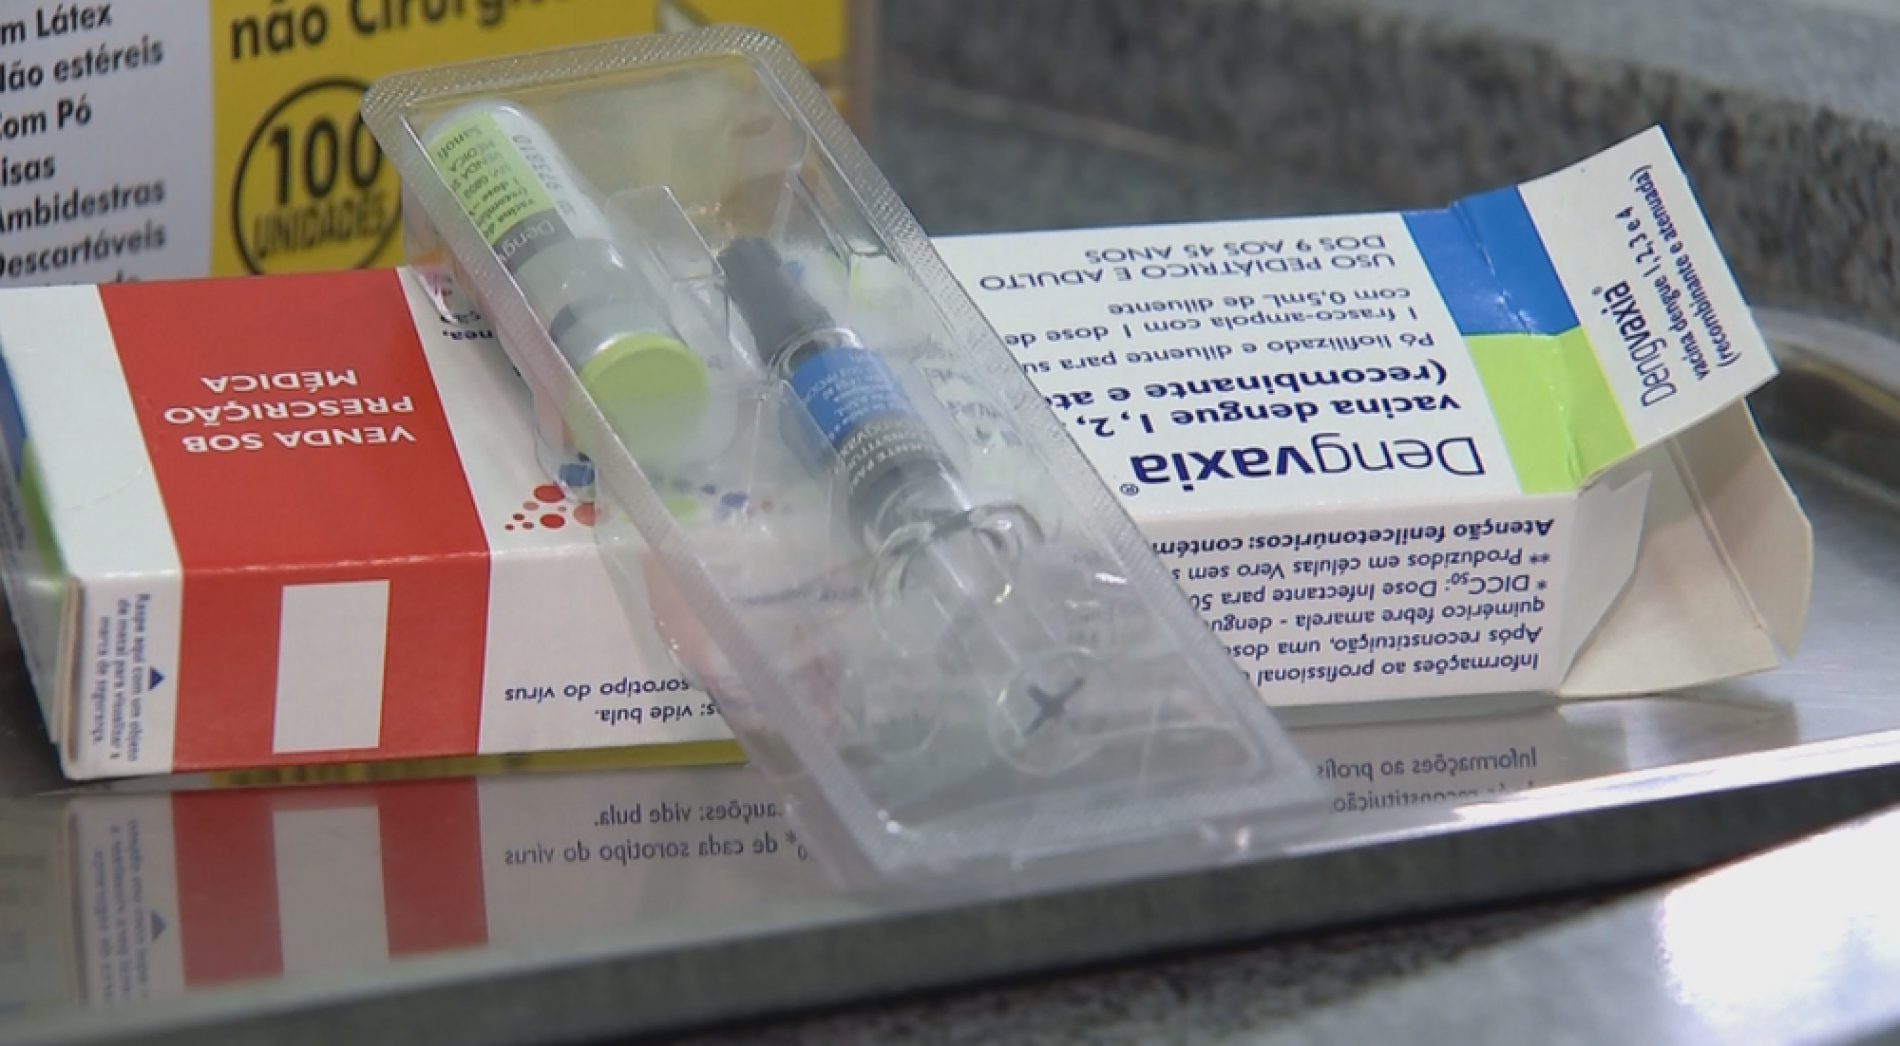 DENGUE: Vacina não deve ser tomada por quem nunca teve a doença, diz nova recomendação da Anvisa